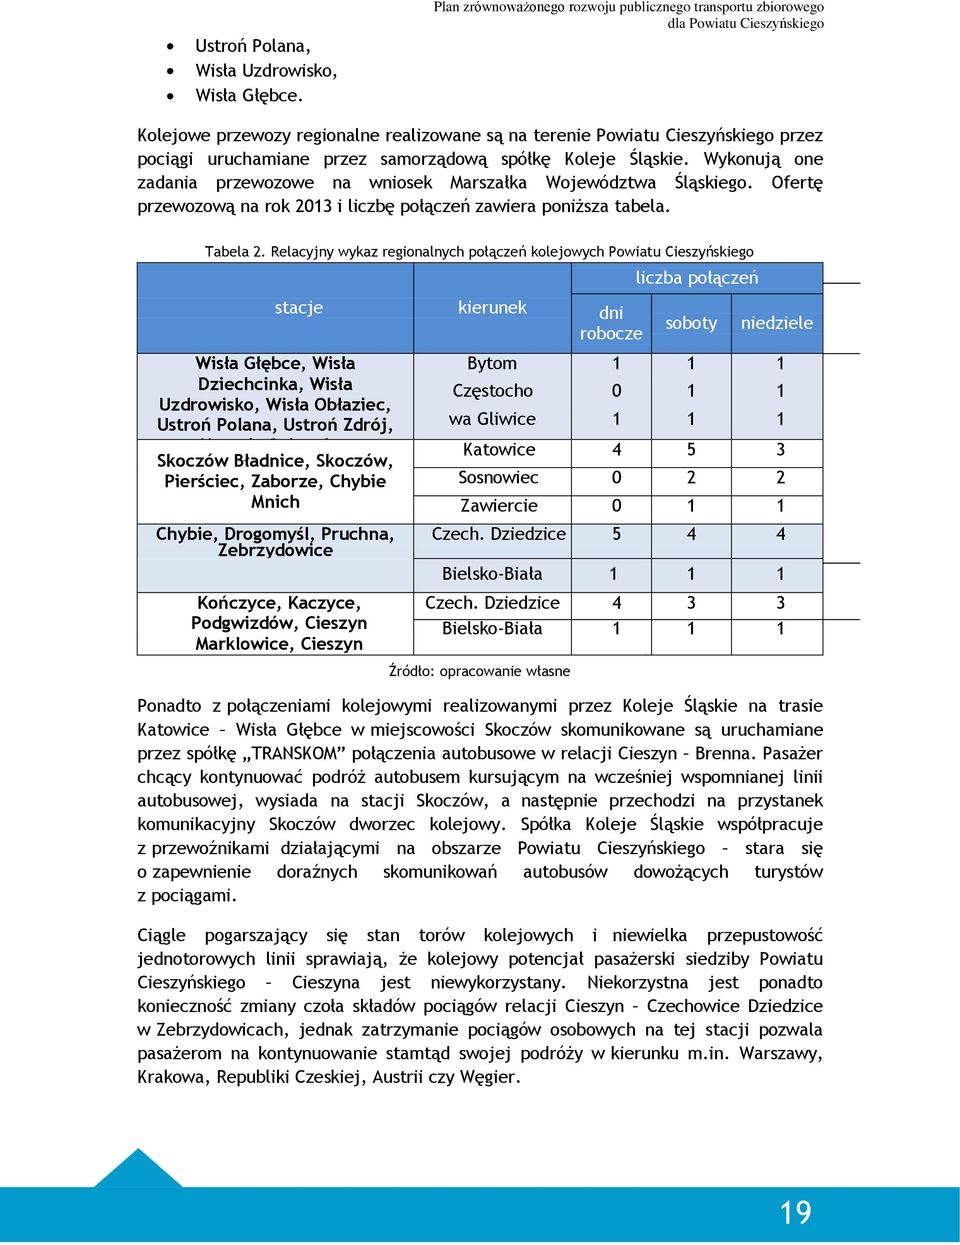 Śląskie. Wykonują one zadania przewozowe na wniosek Marszałka Województwa Śląskiego. Ofertę przewozową na rok 2013 i liczbę połączeń zawiera poniższa tabela. Tabela 2.